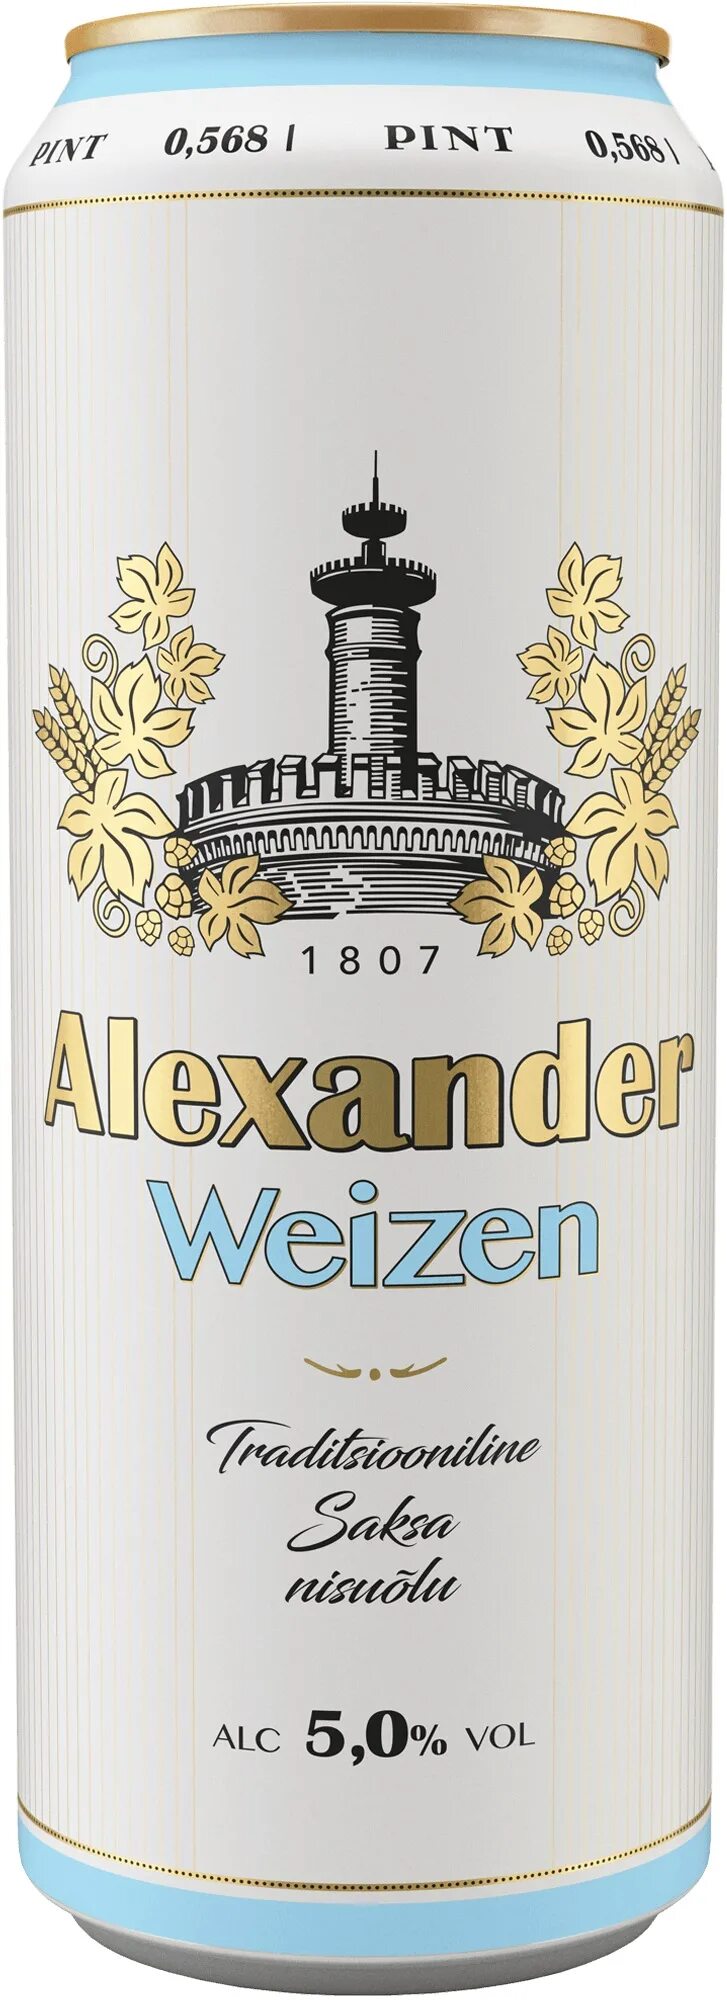 Aleksander пиво Эстония. Б ж александров